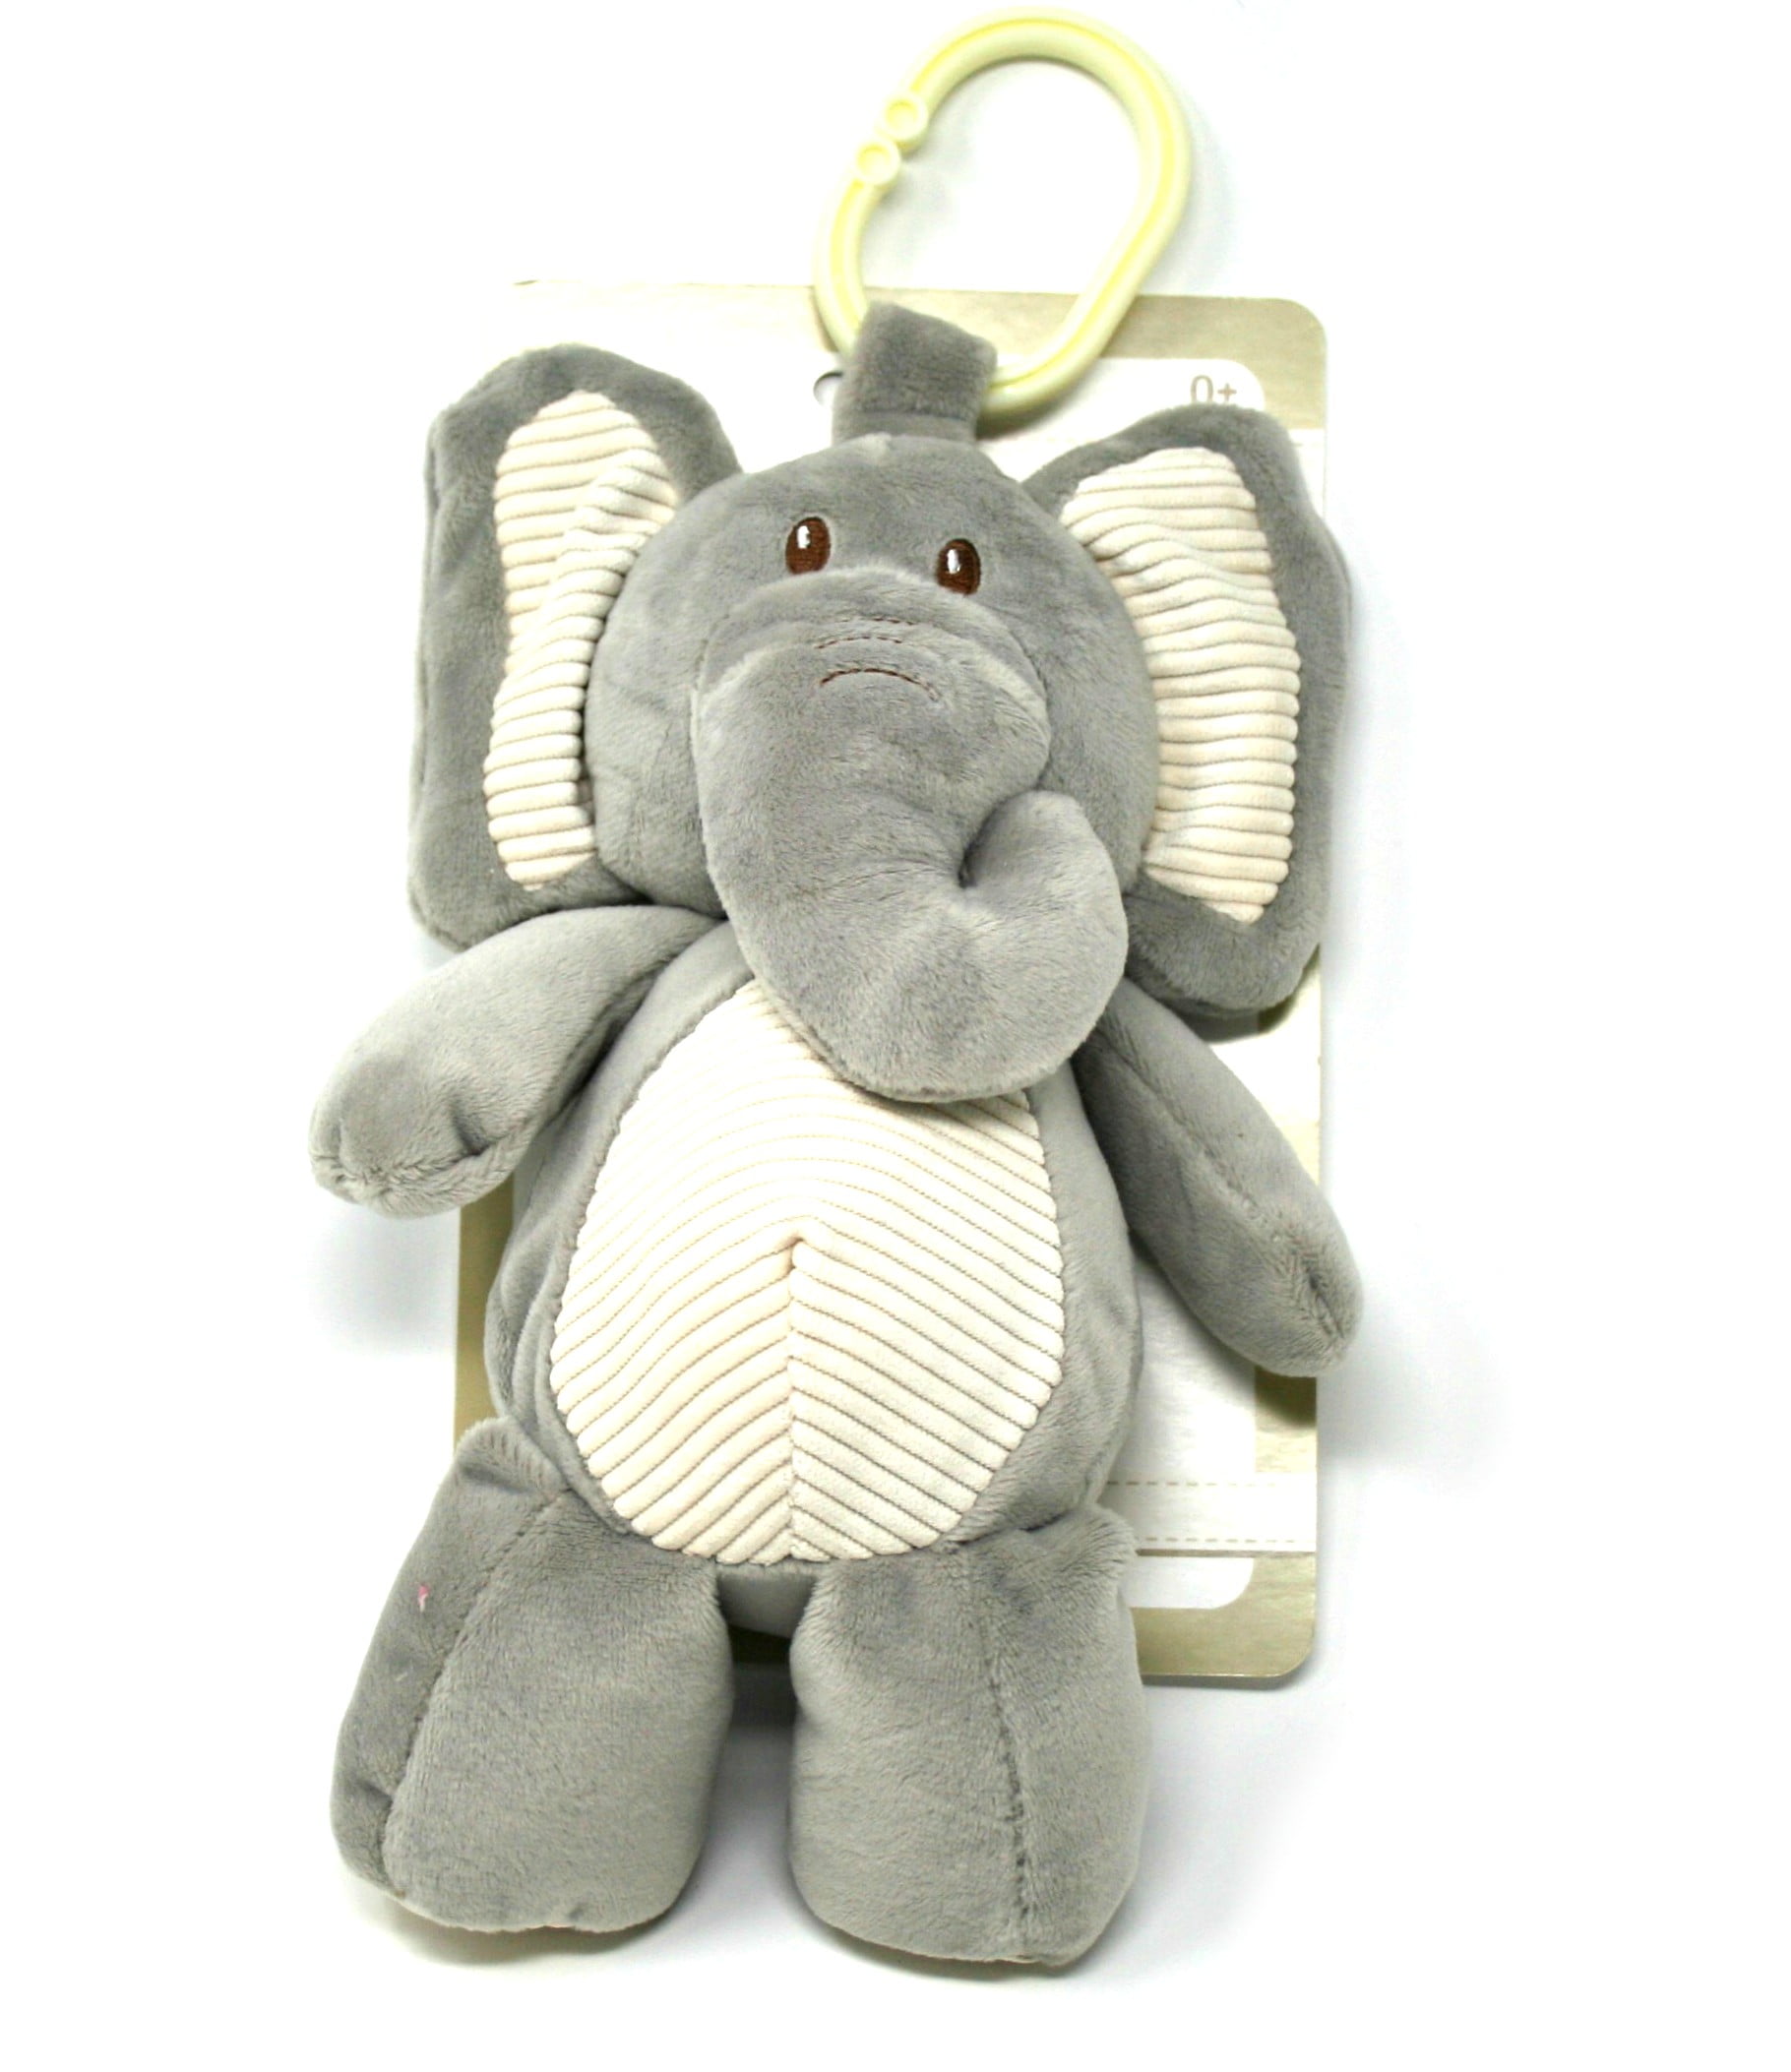 Kelly Baby soft toy Elephant Plush Pram Toy Rattle 25 Cm 